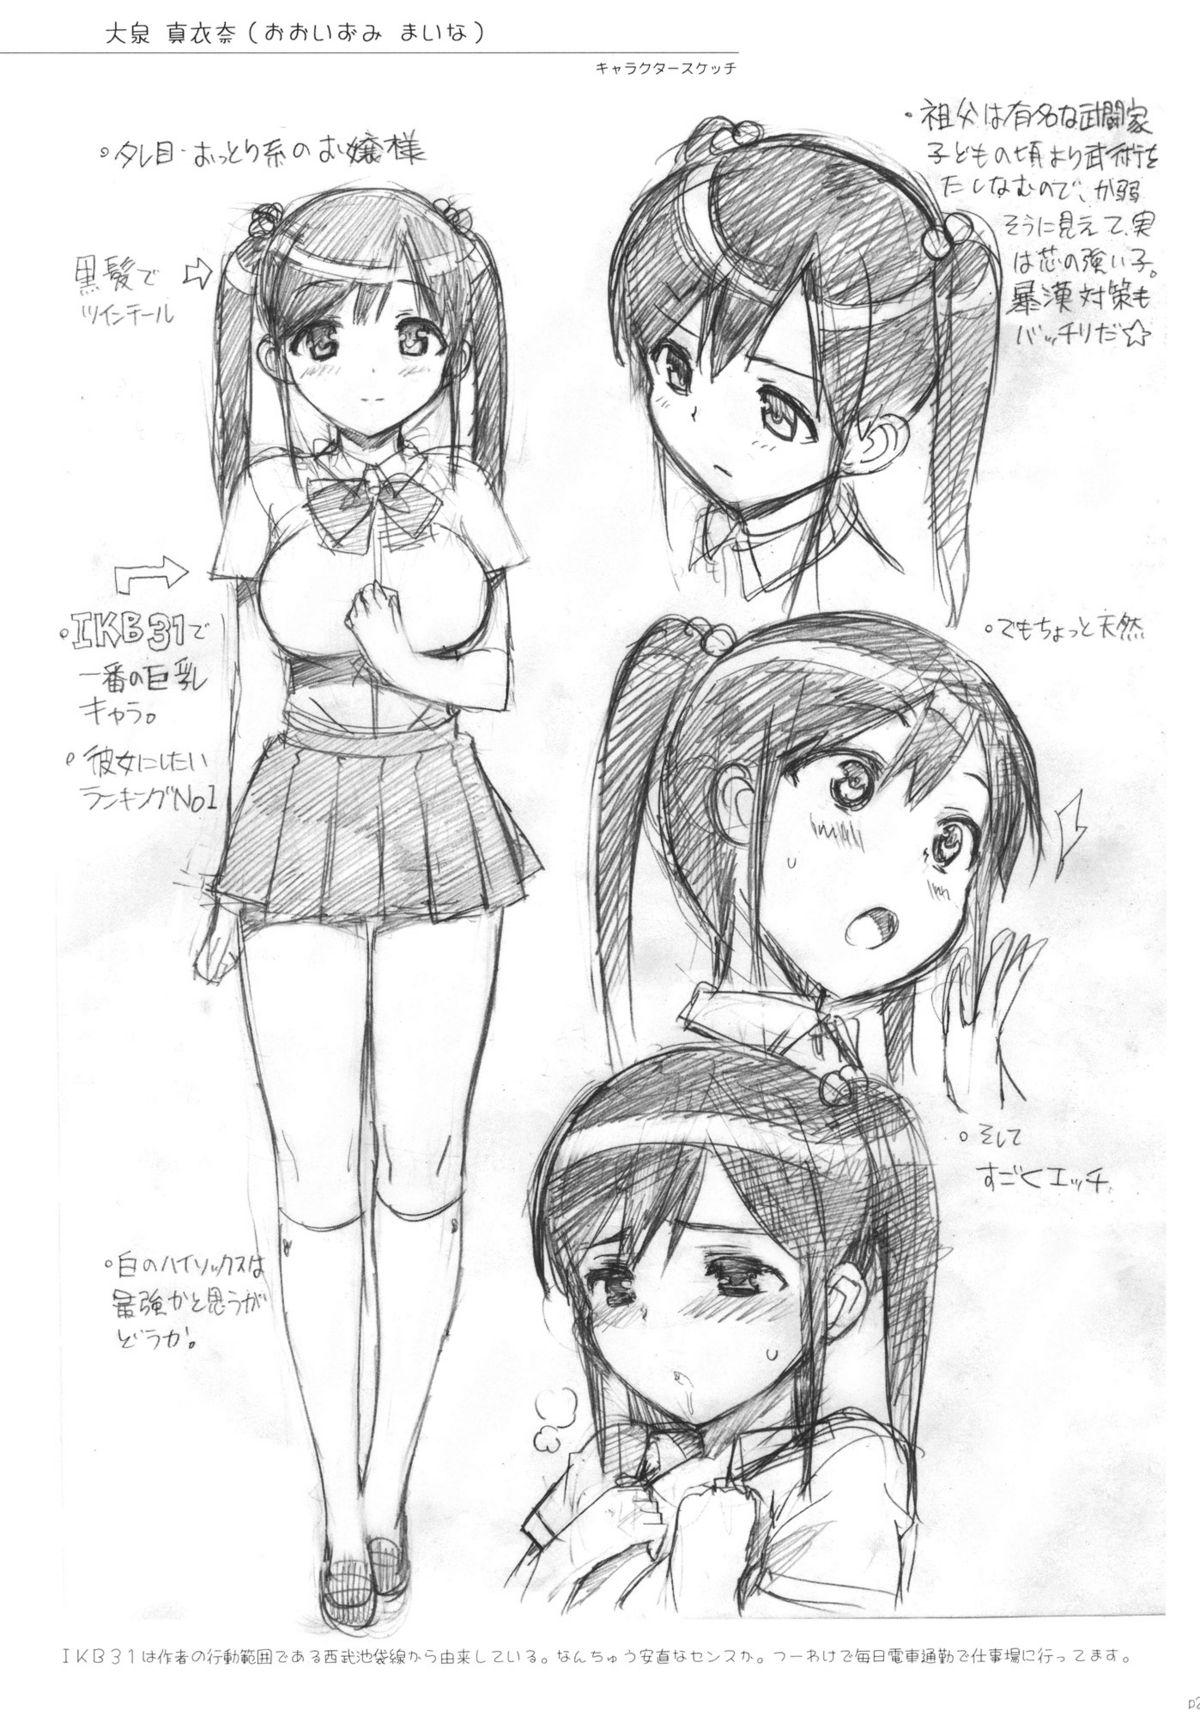 Sex Takuji Hon 2011 Natsu - Ore no imouto ga konna ni kawaii wake ga nai Female Domination - Page 20